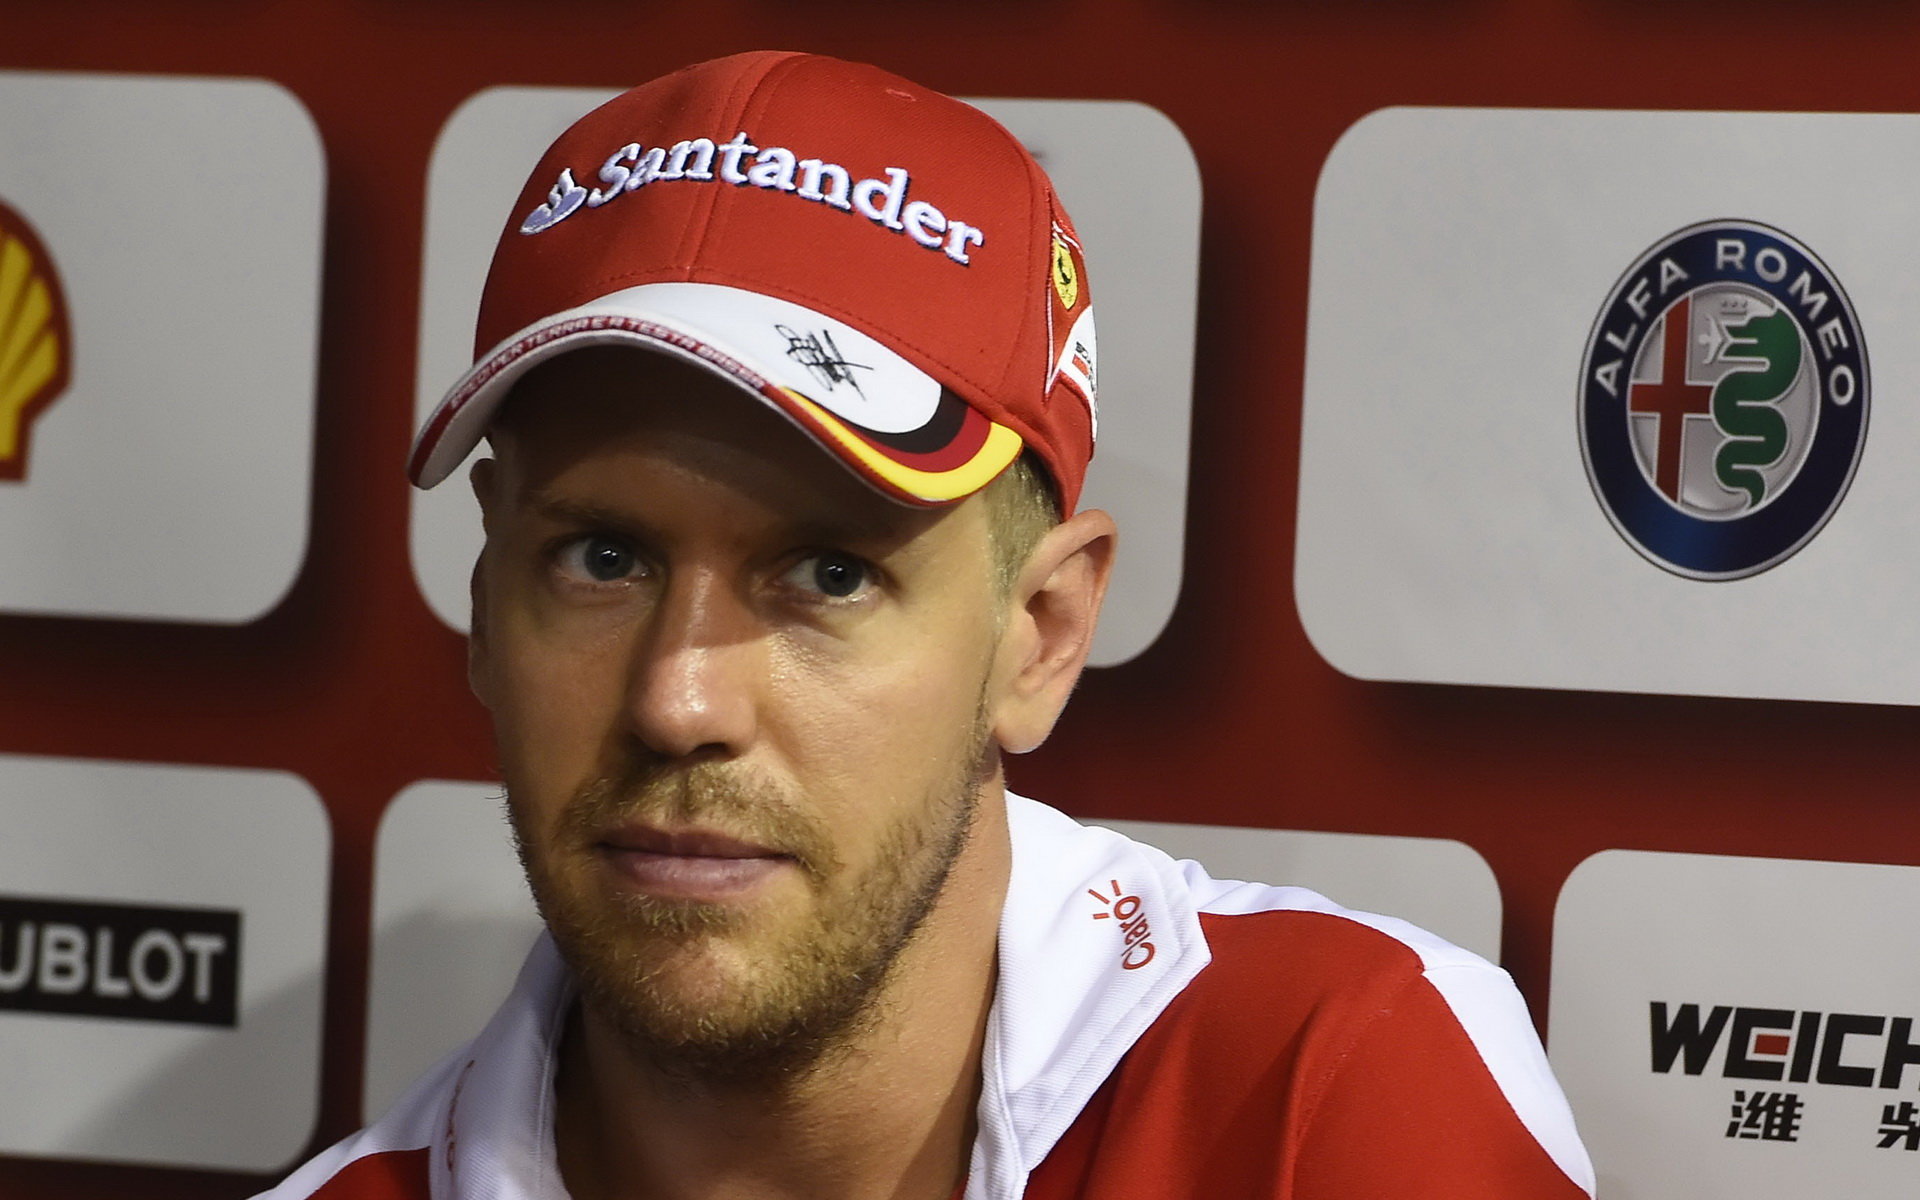 Přestože Vettel v Singapuru odvedl úctyhodný výkon, spokojen být nemohl